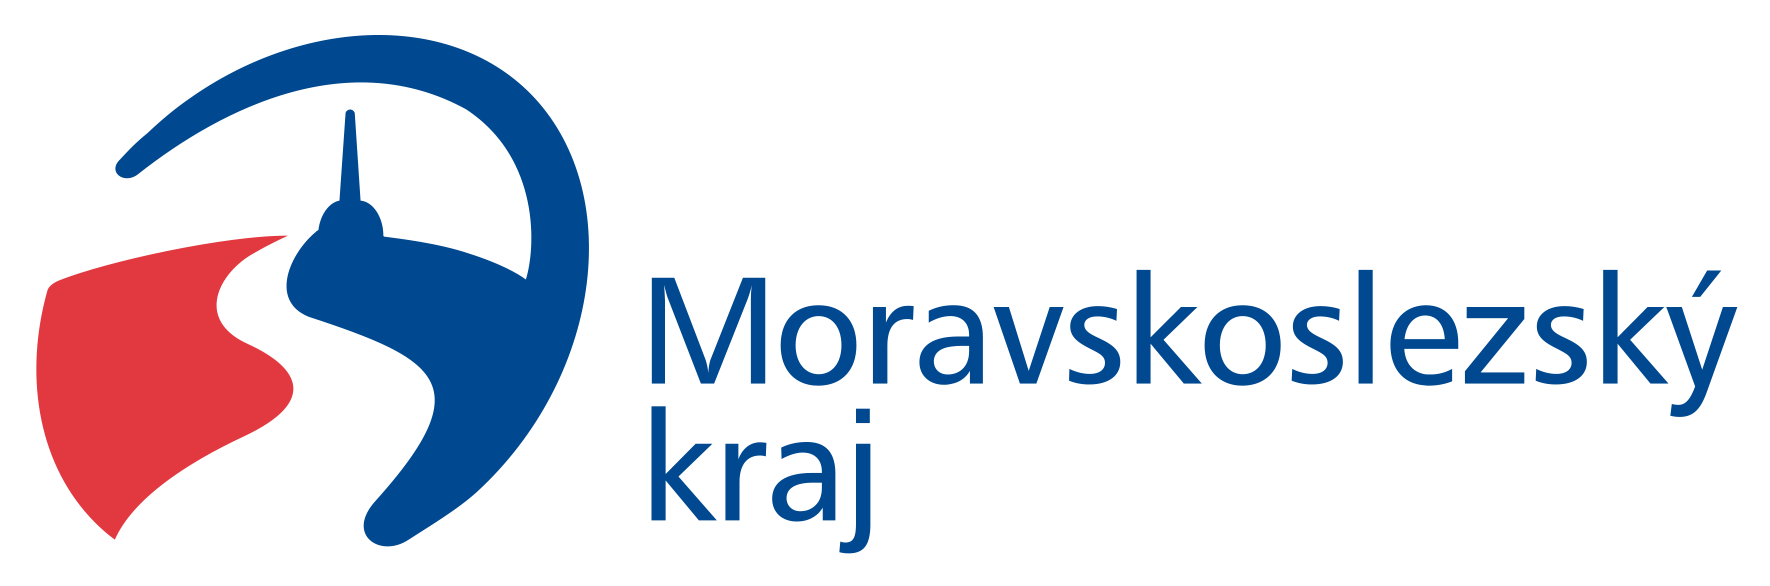 MoravskoslezskyKraj